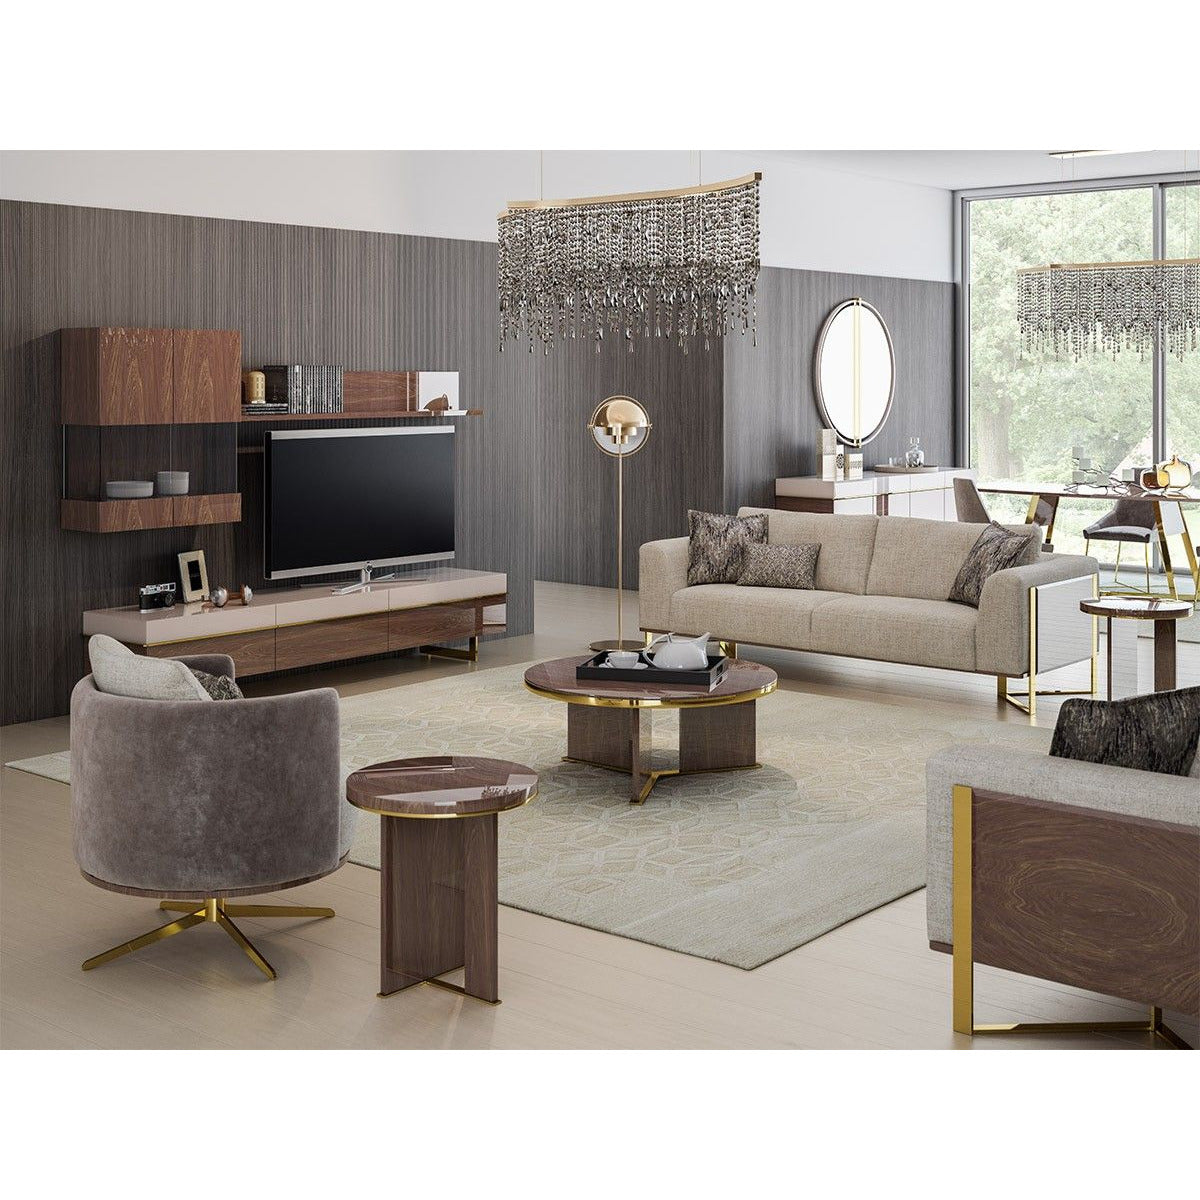 Aura Fåtölj - LINE Furniture Group